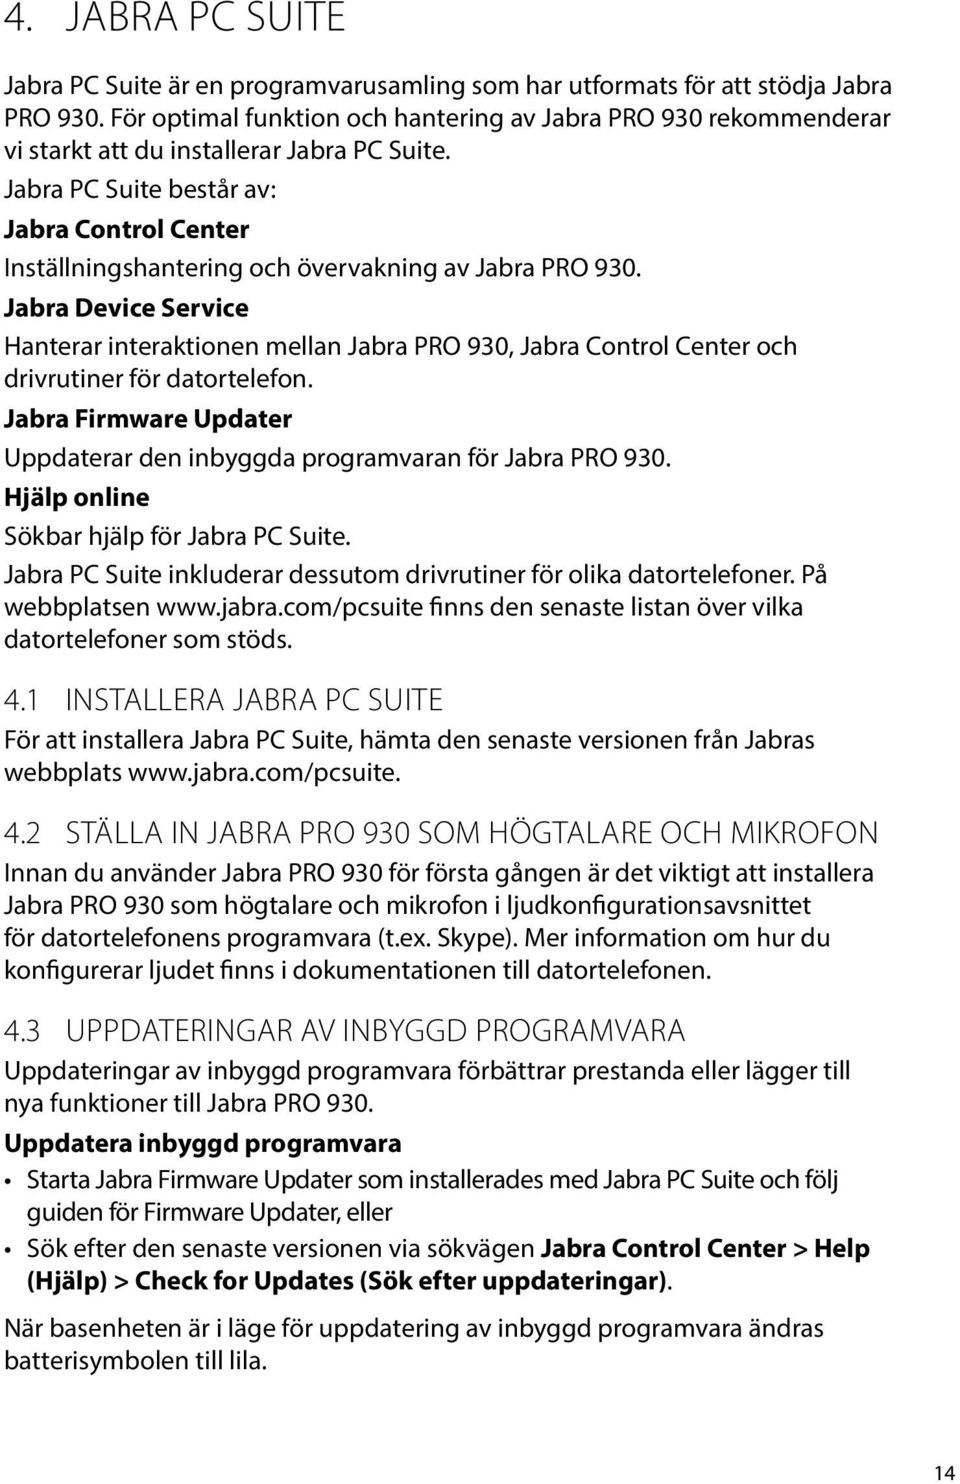 Jabra PC Suite består av: Jabra Control Center Inställningshantering och övervakning av Jabra PRO 930.